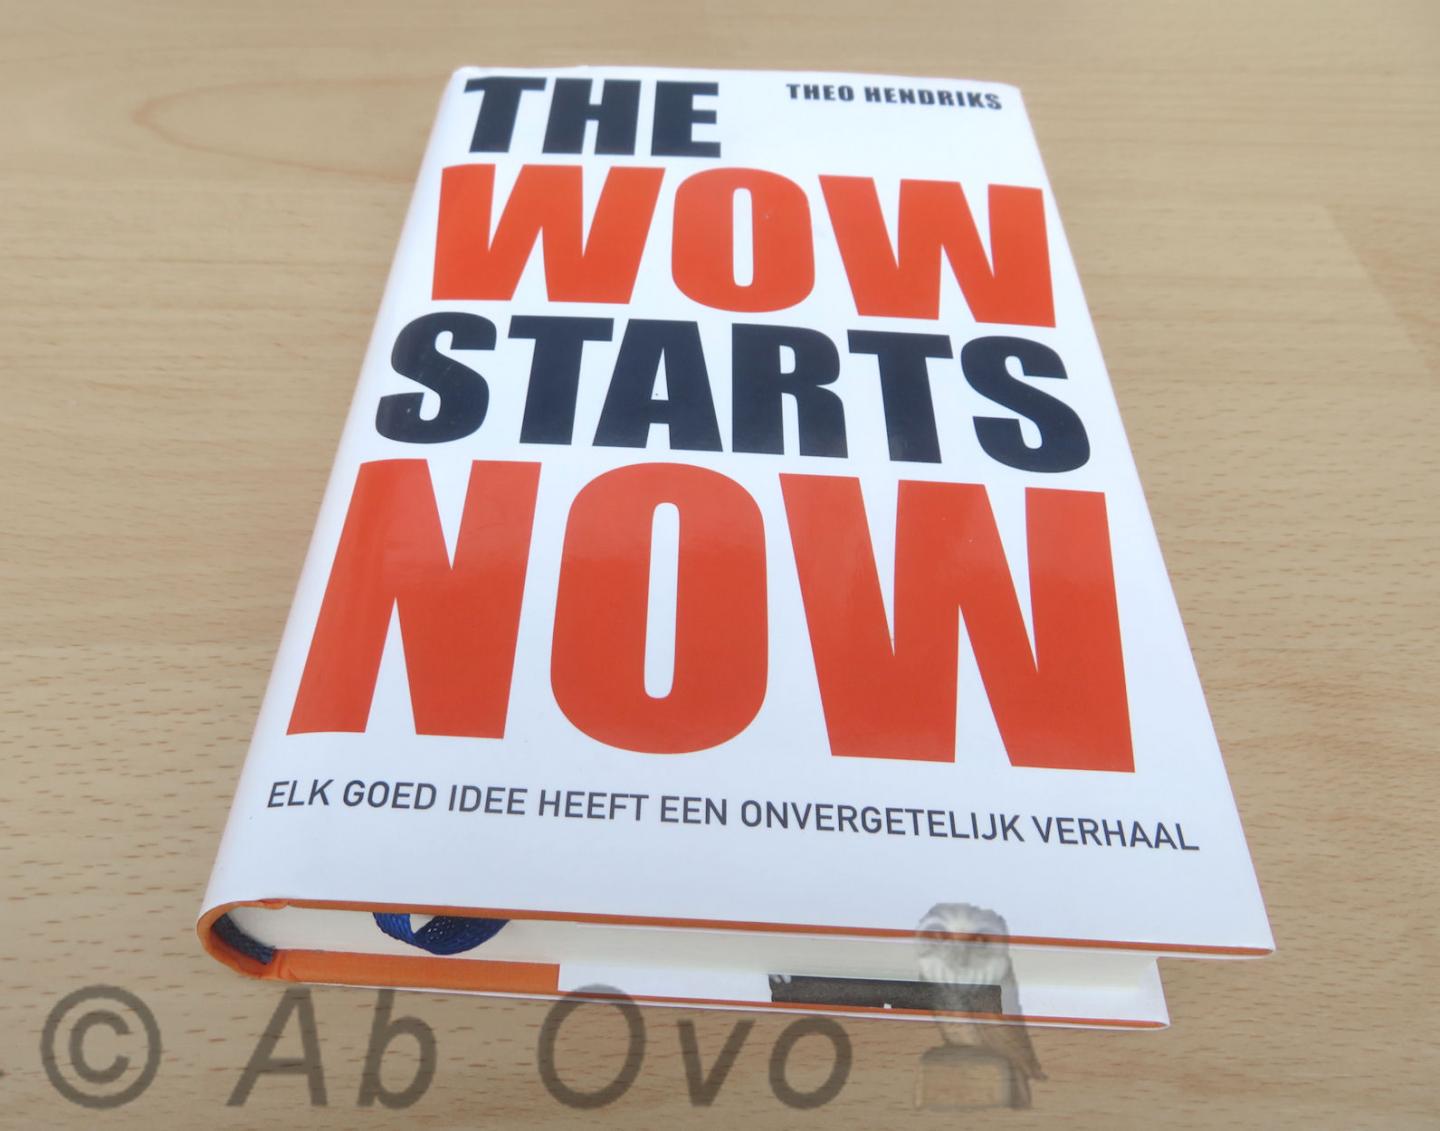 Hendriks, Theo - The wow starts now / Elk goed idee heeft een onvergetelijk verhaal